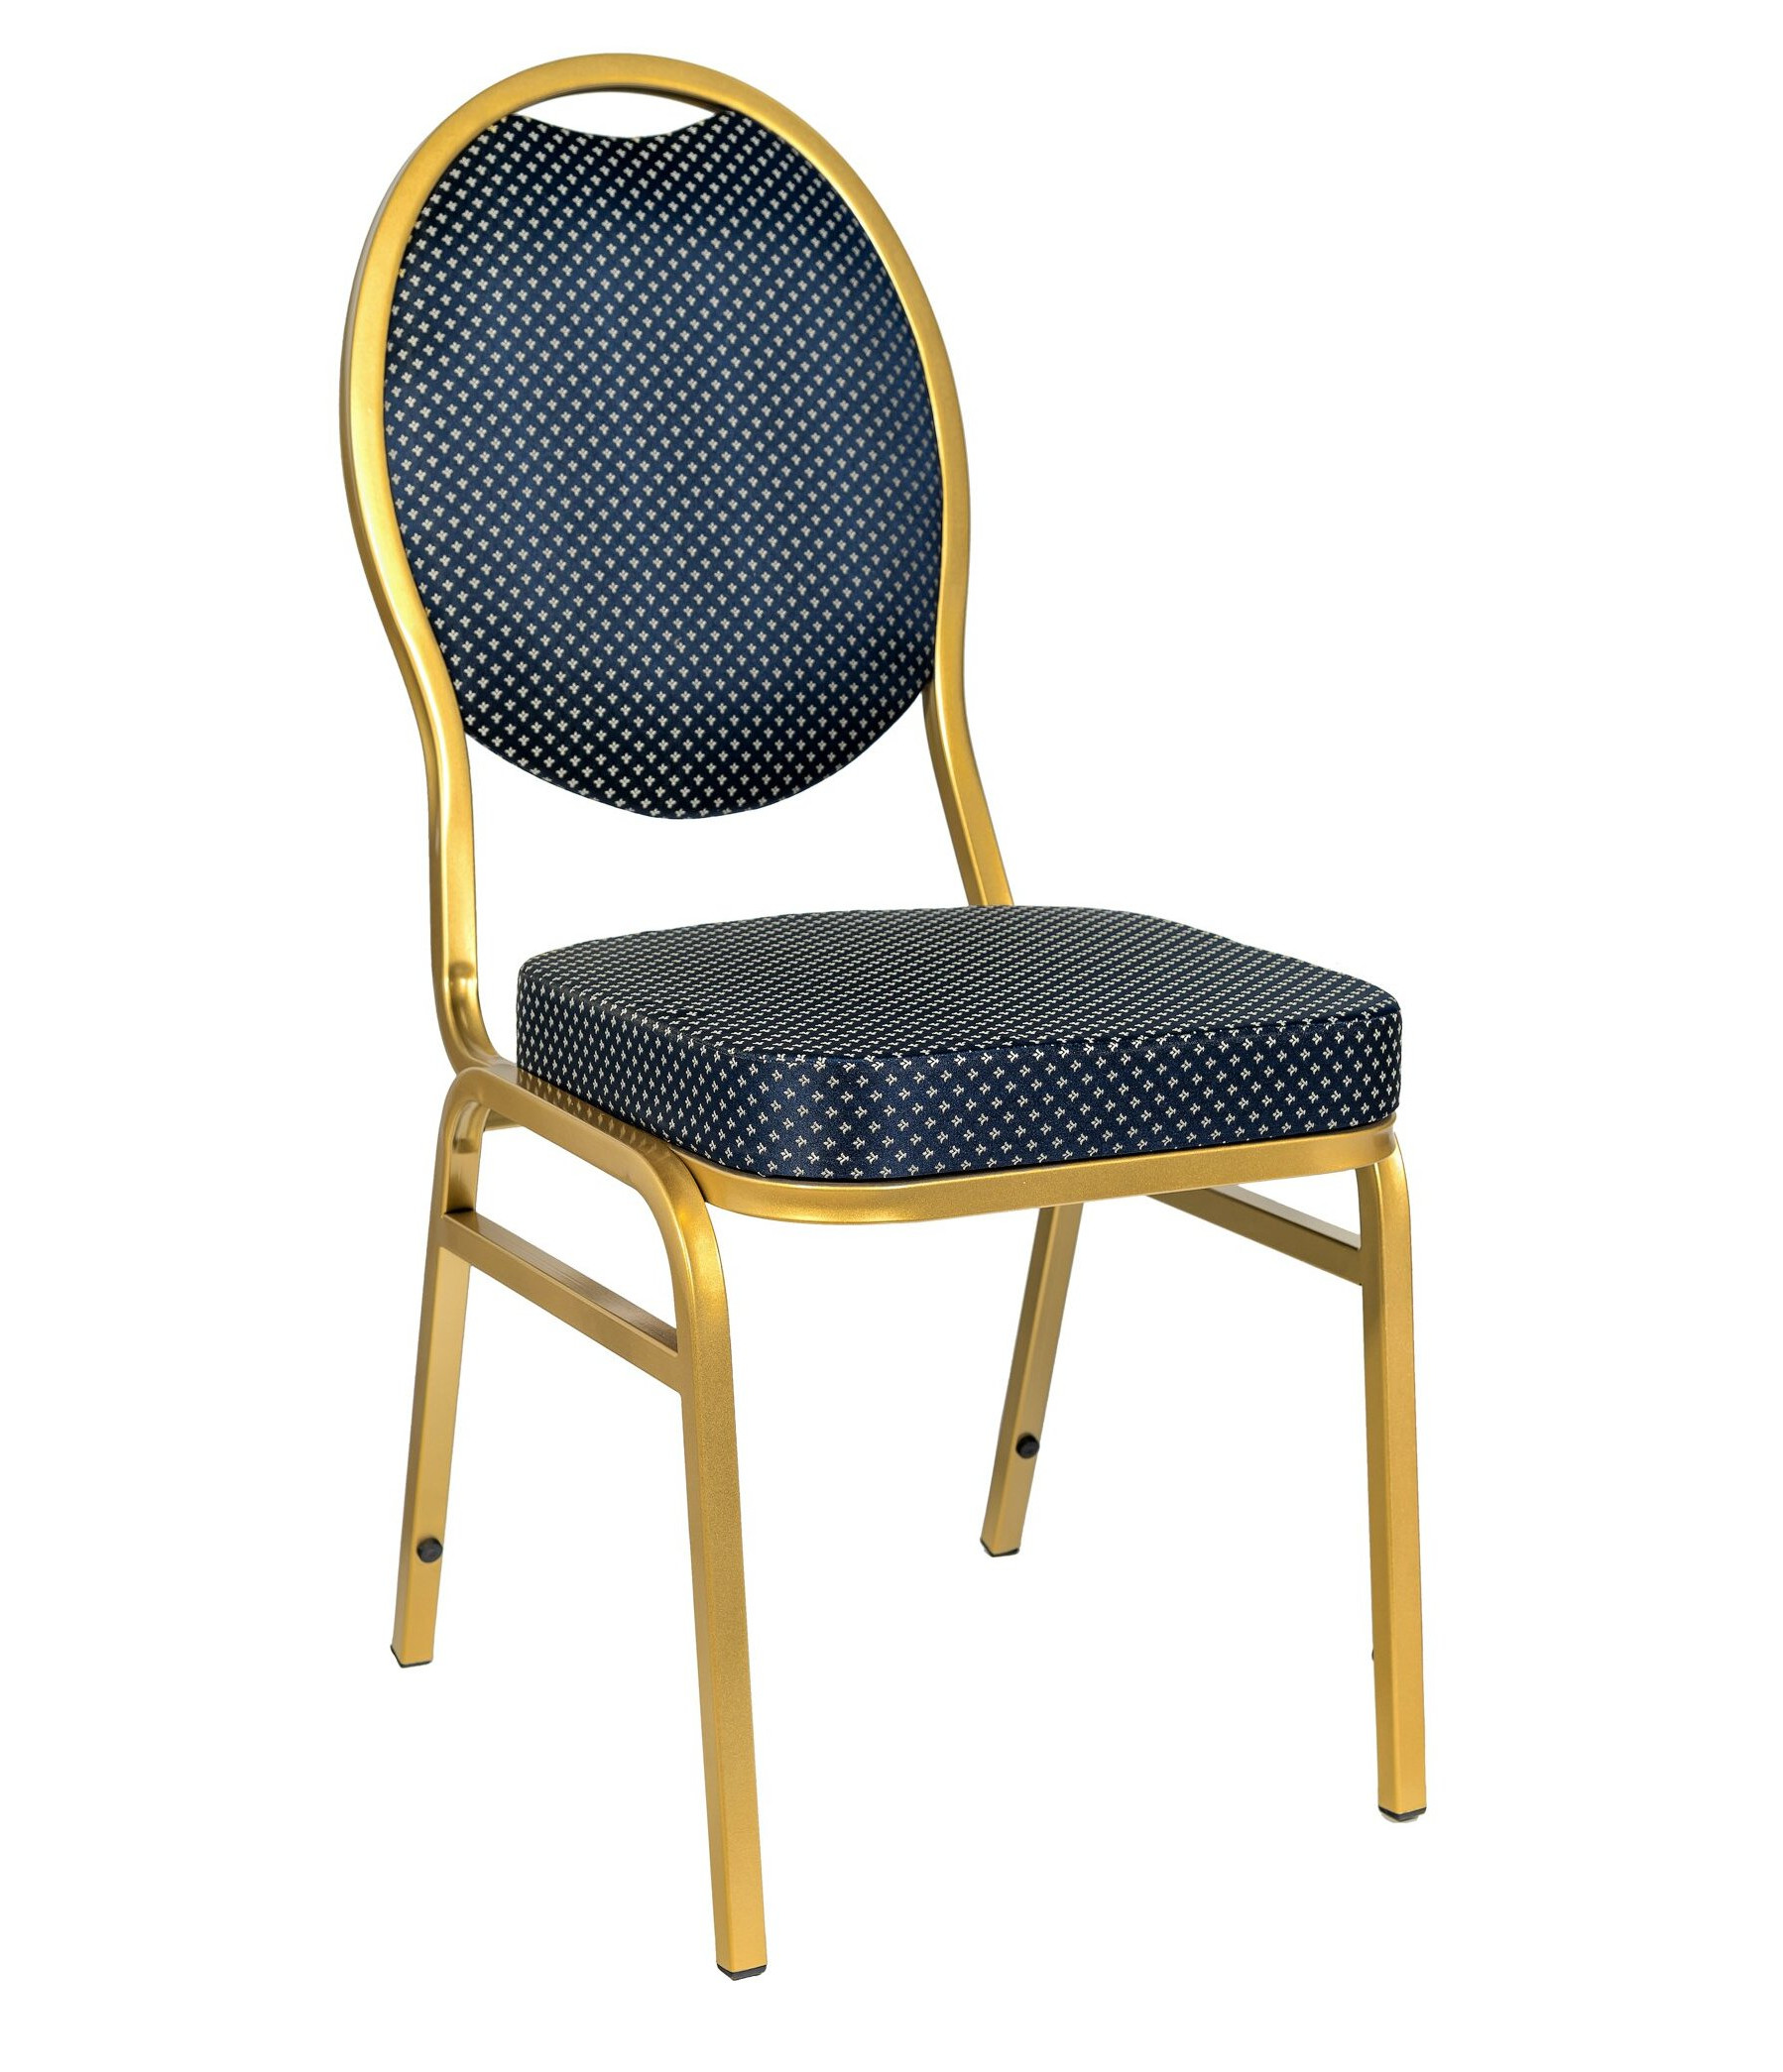 Банкетный стул Квин 20мм золотой, синяя корона